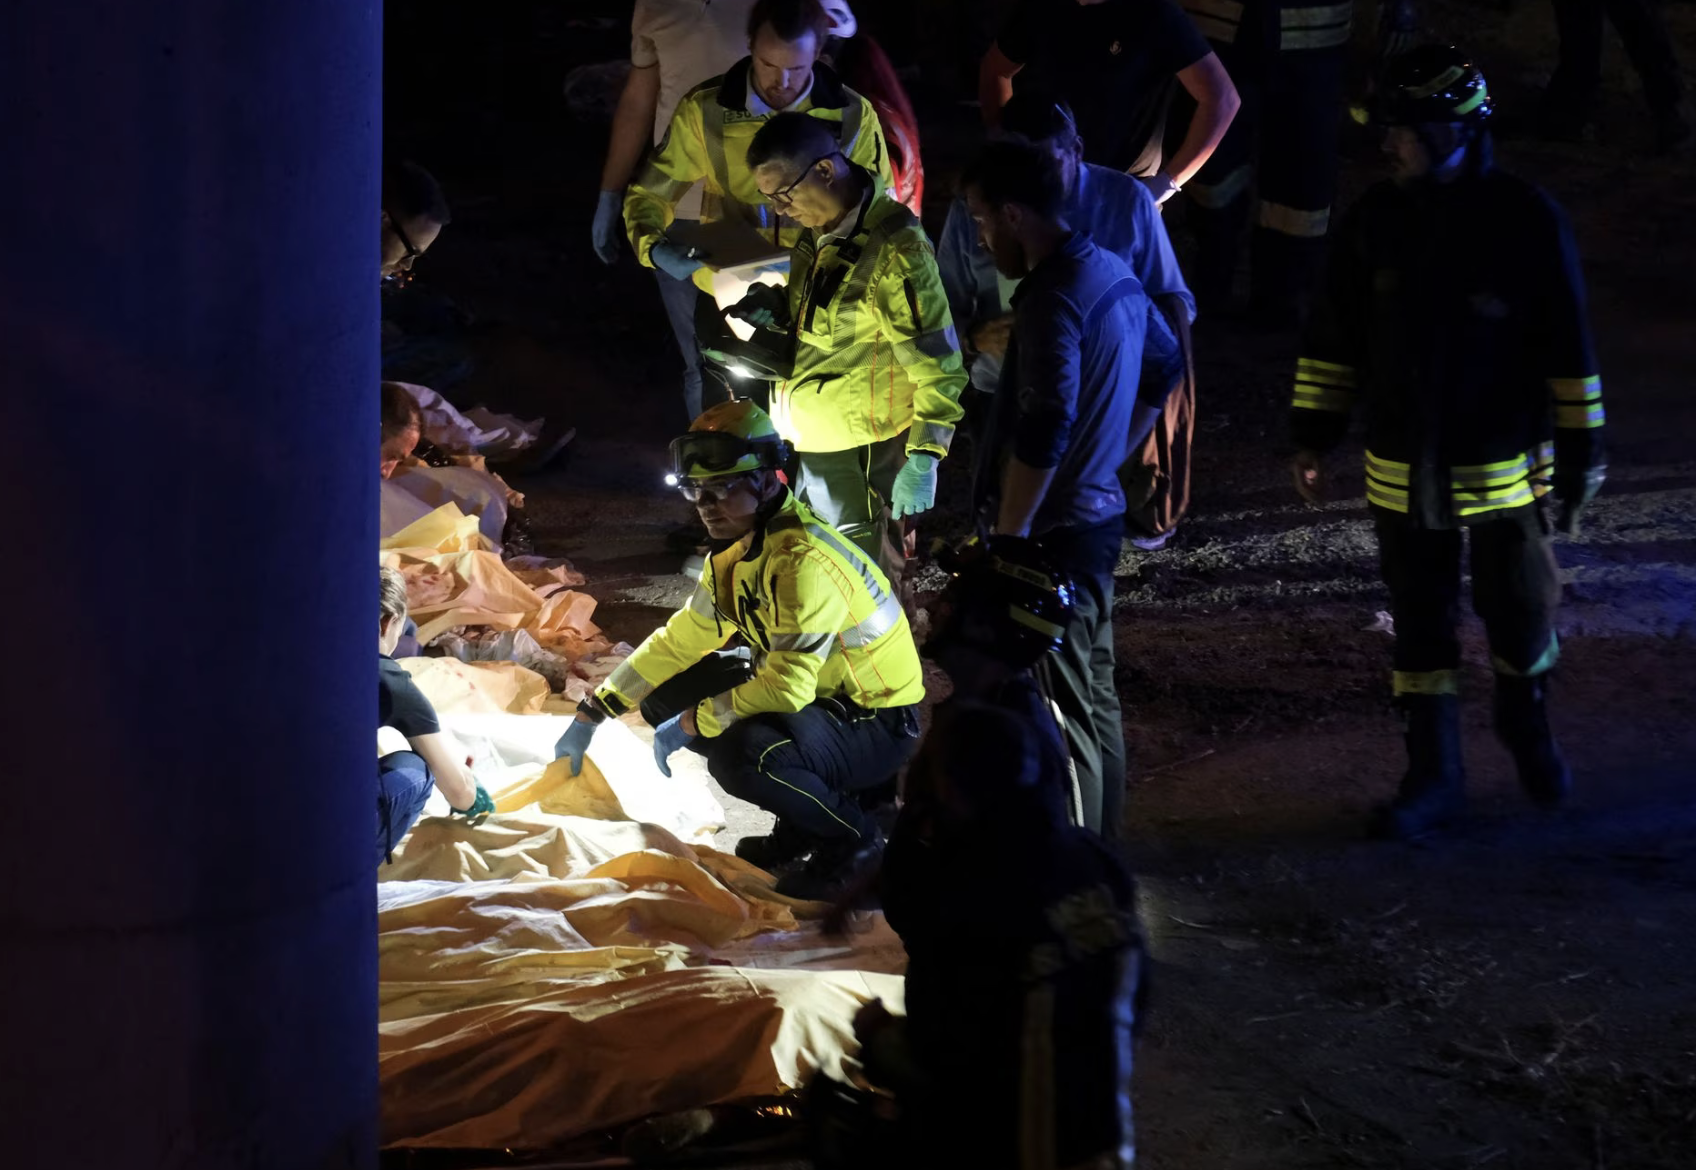 Video hiện trường vụ tai nạn xe buýt kinh hoàng tại Italy, gần 40 người thương vong  - Ảnh 2.